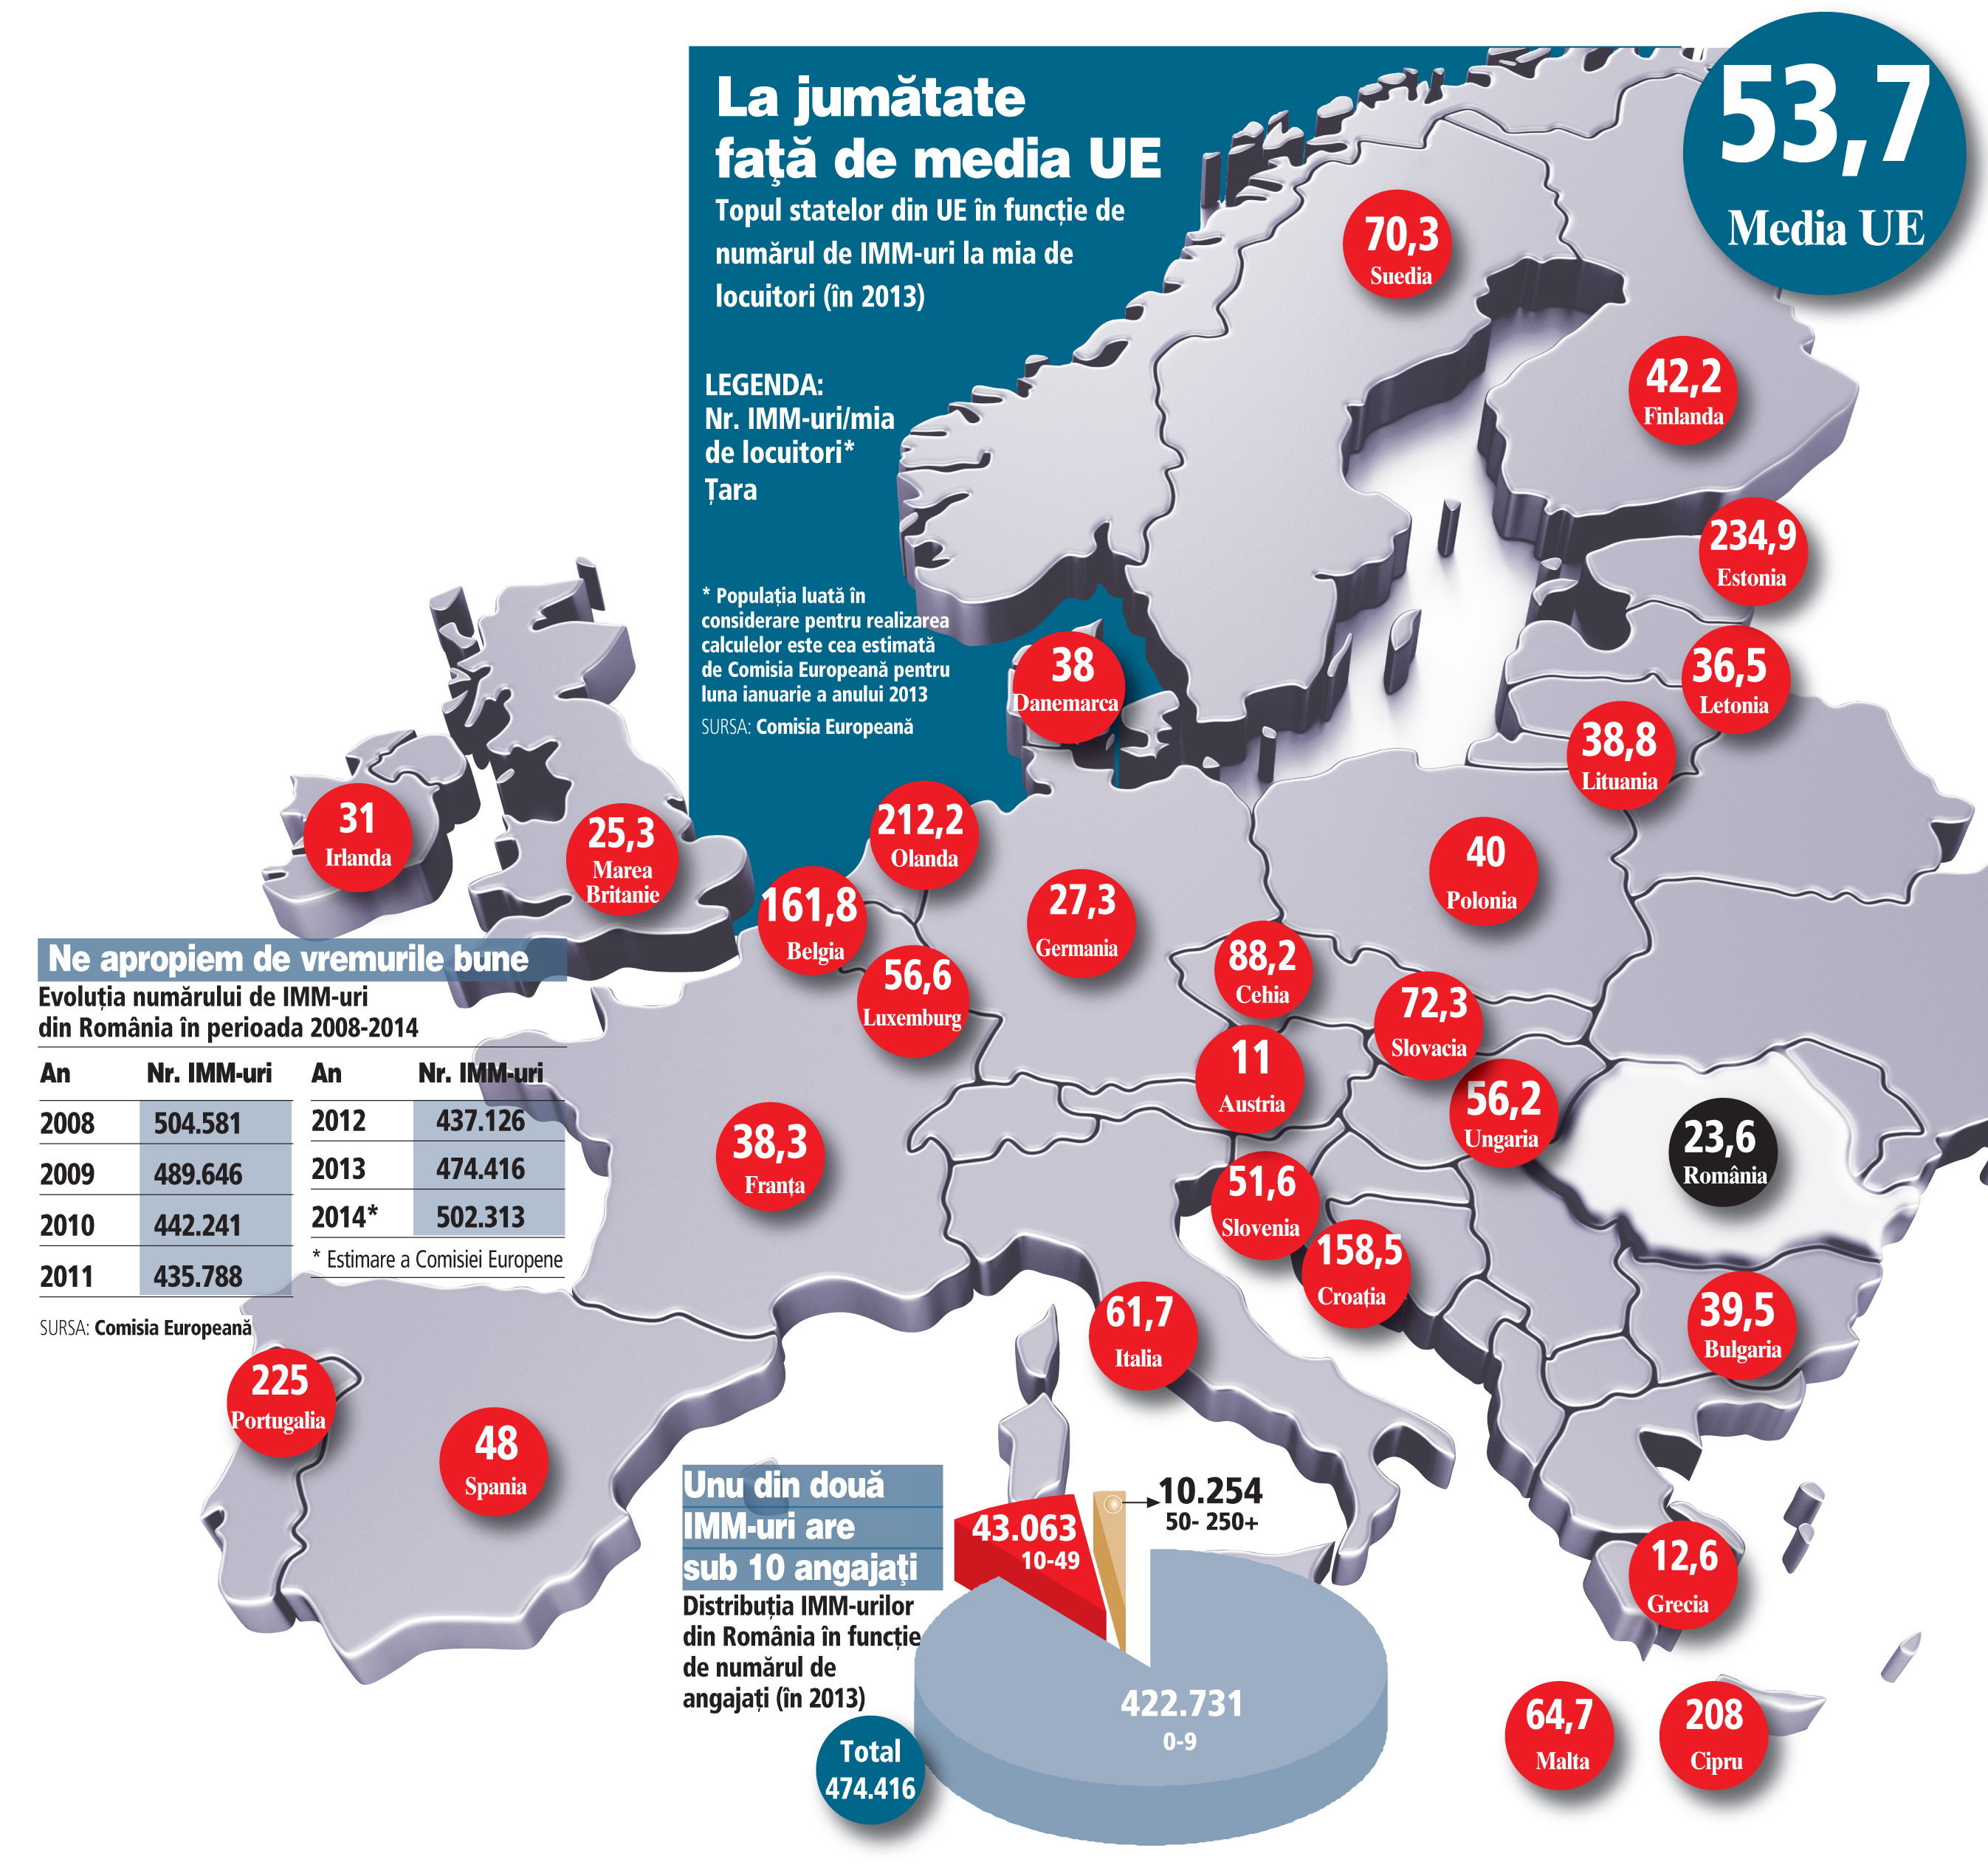 Cu 24 de IMM-uri la o mie de locuitori, la jumătate faţă de UE, România rămâne prizoniera companiilor puţine şi mari